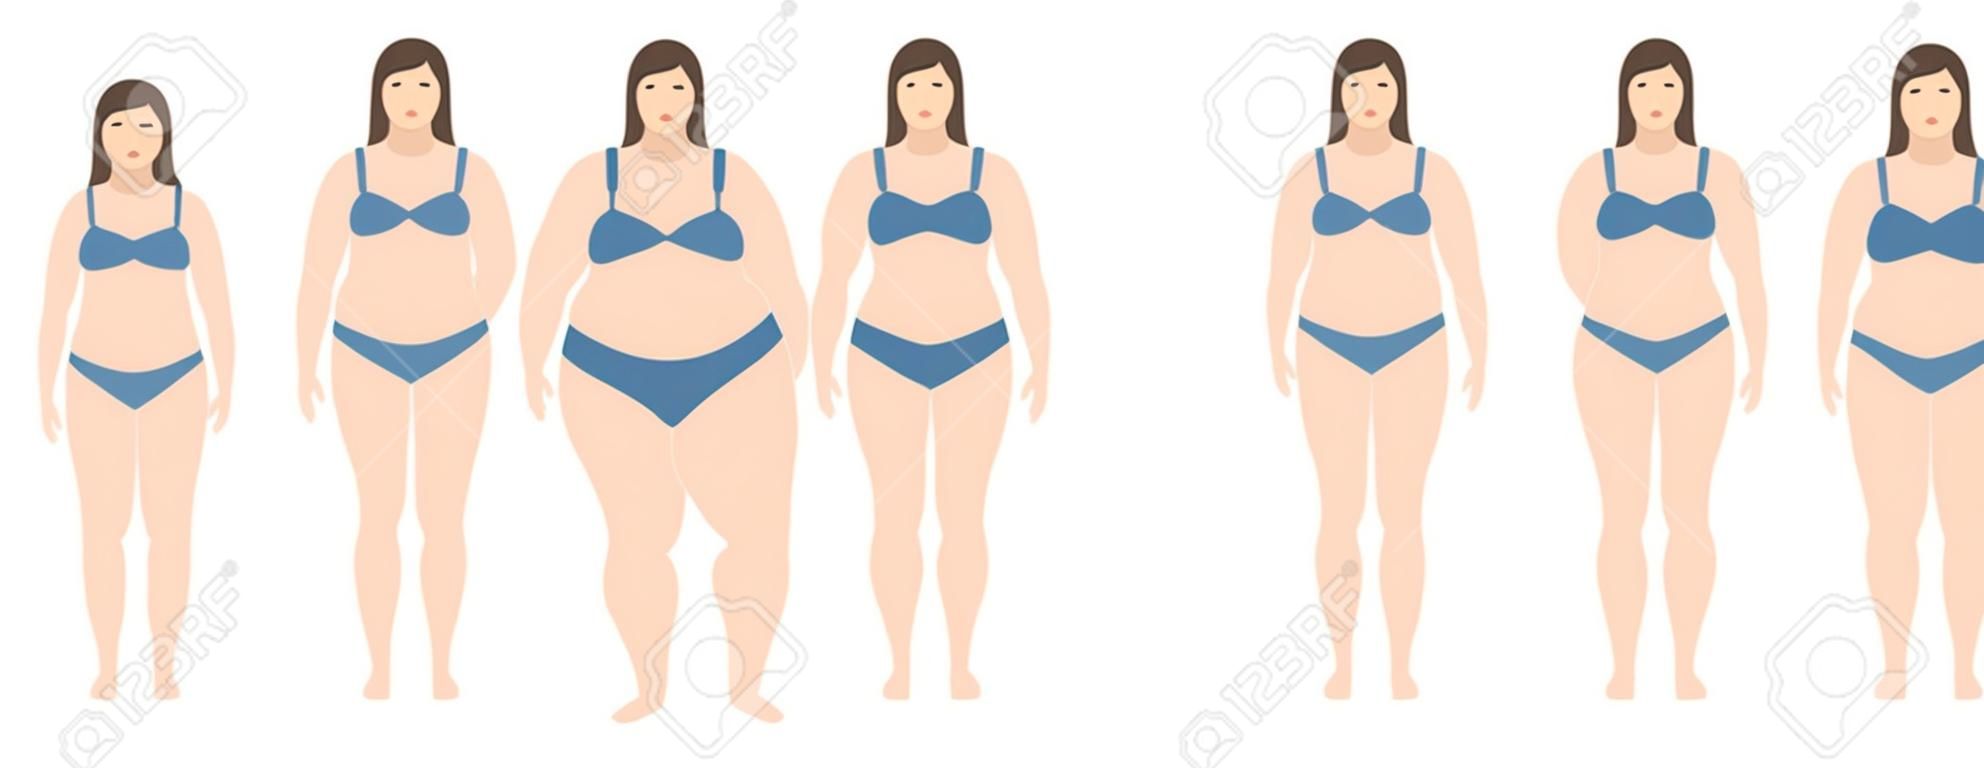 Una ilustración vectorial de mujeres con diferente peso de anorexia a extremadamente obesas. Índice de masa corporal, concepto de pérdida de peso.